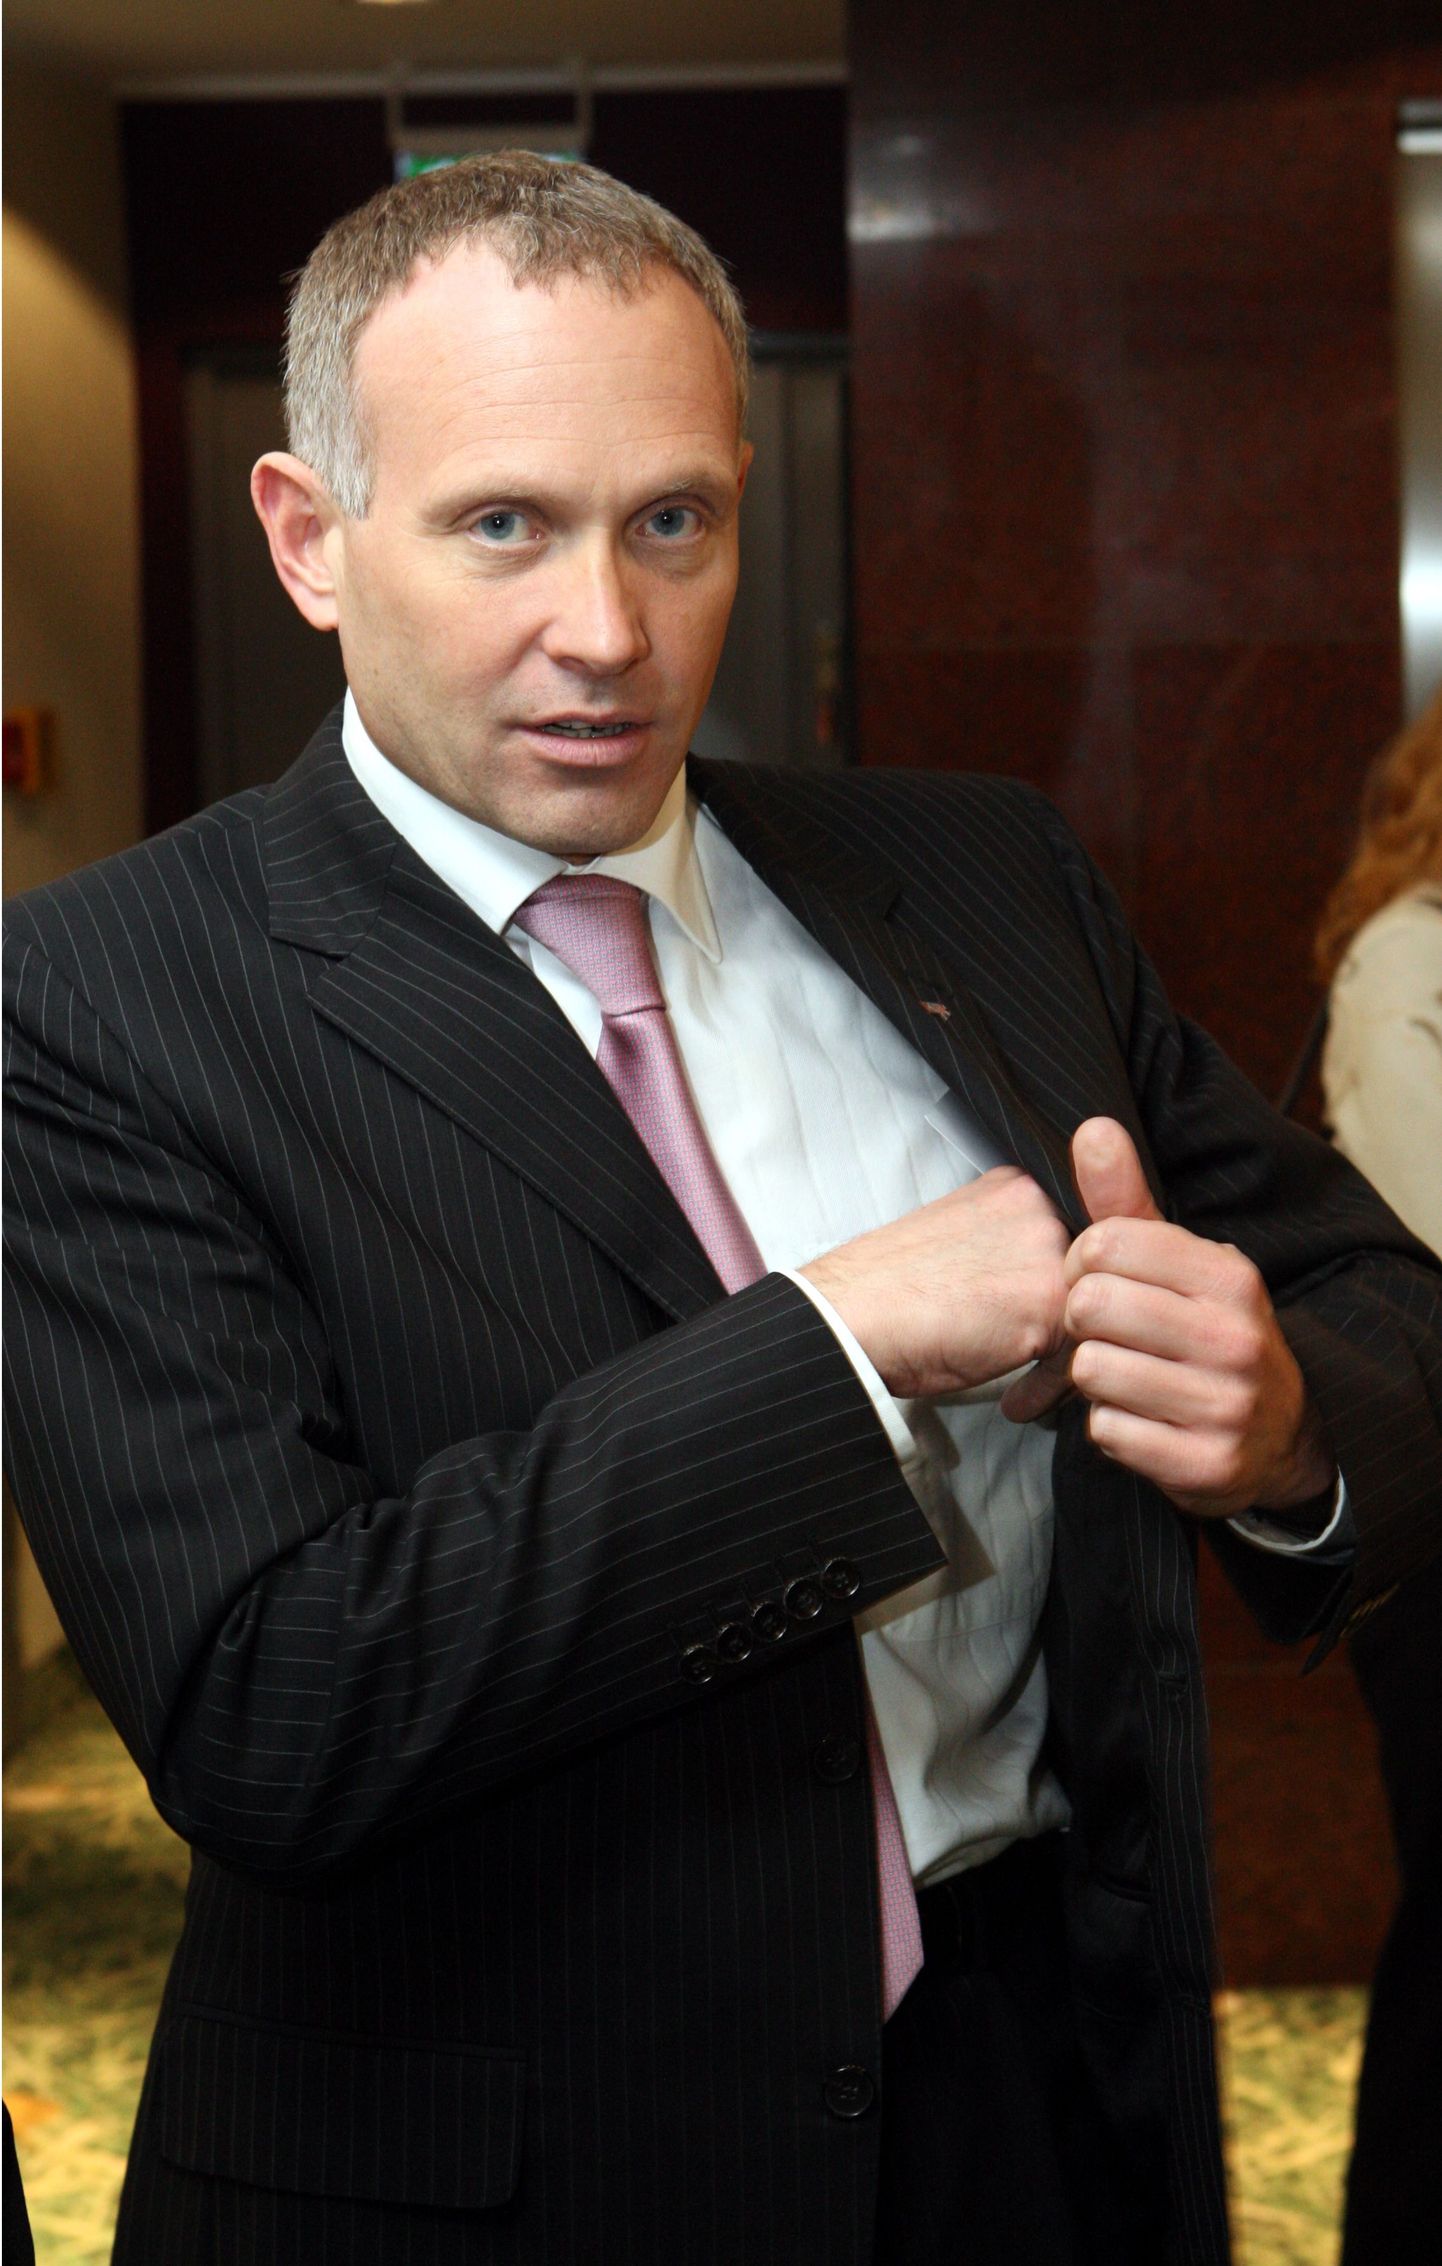 Eesti rikkaimaks meheks nimetatud Armin Karu on Äripäeva rikaste tabelis alles 8. kohal.